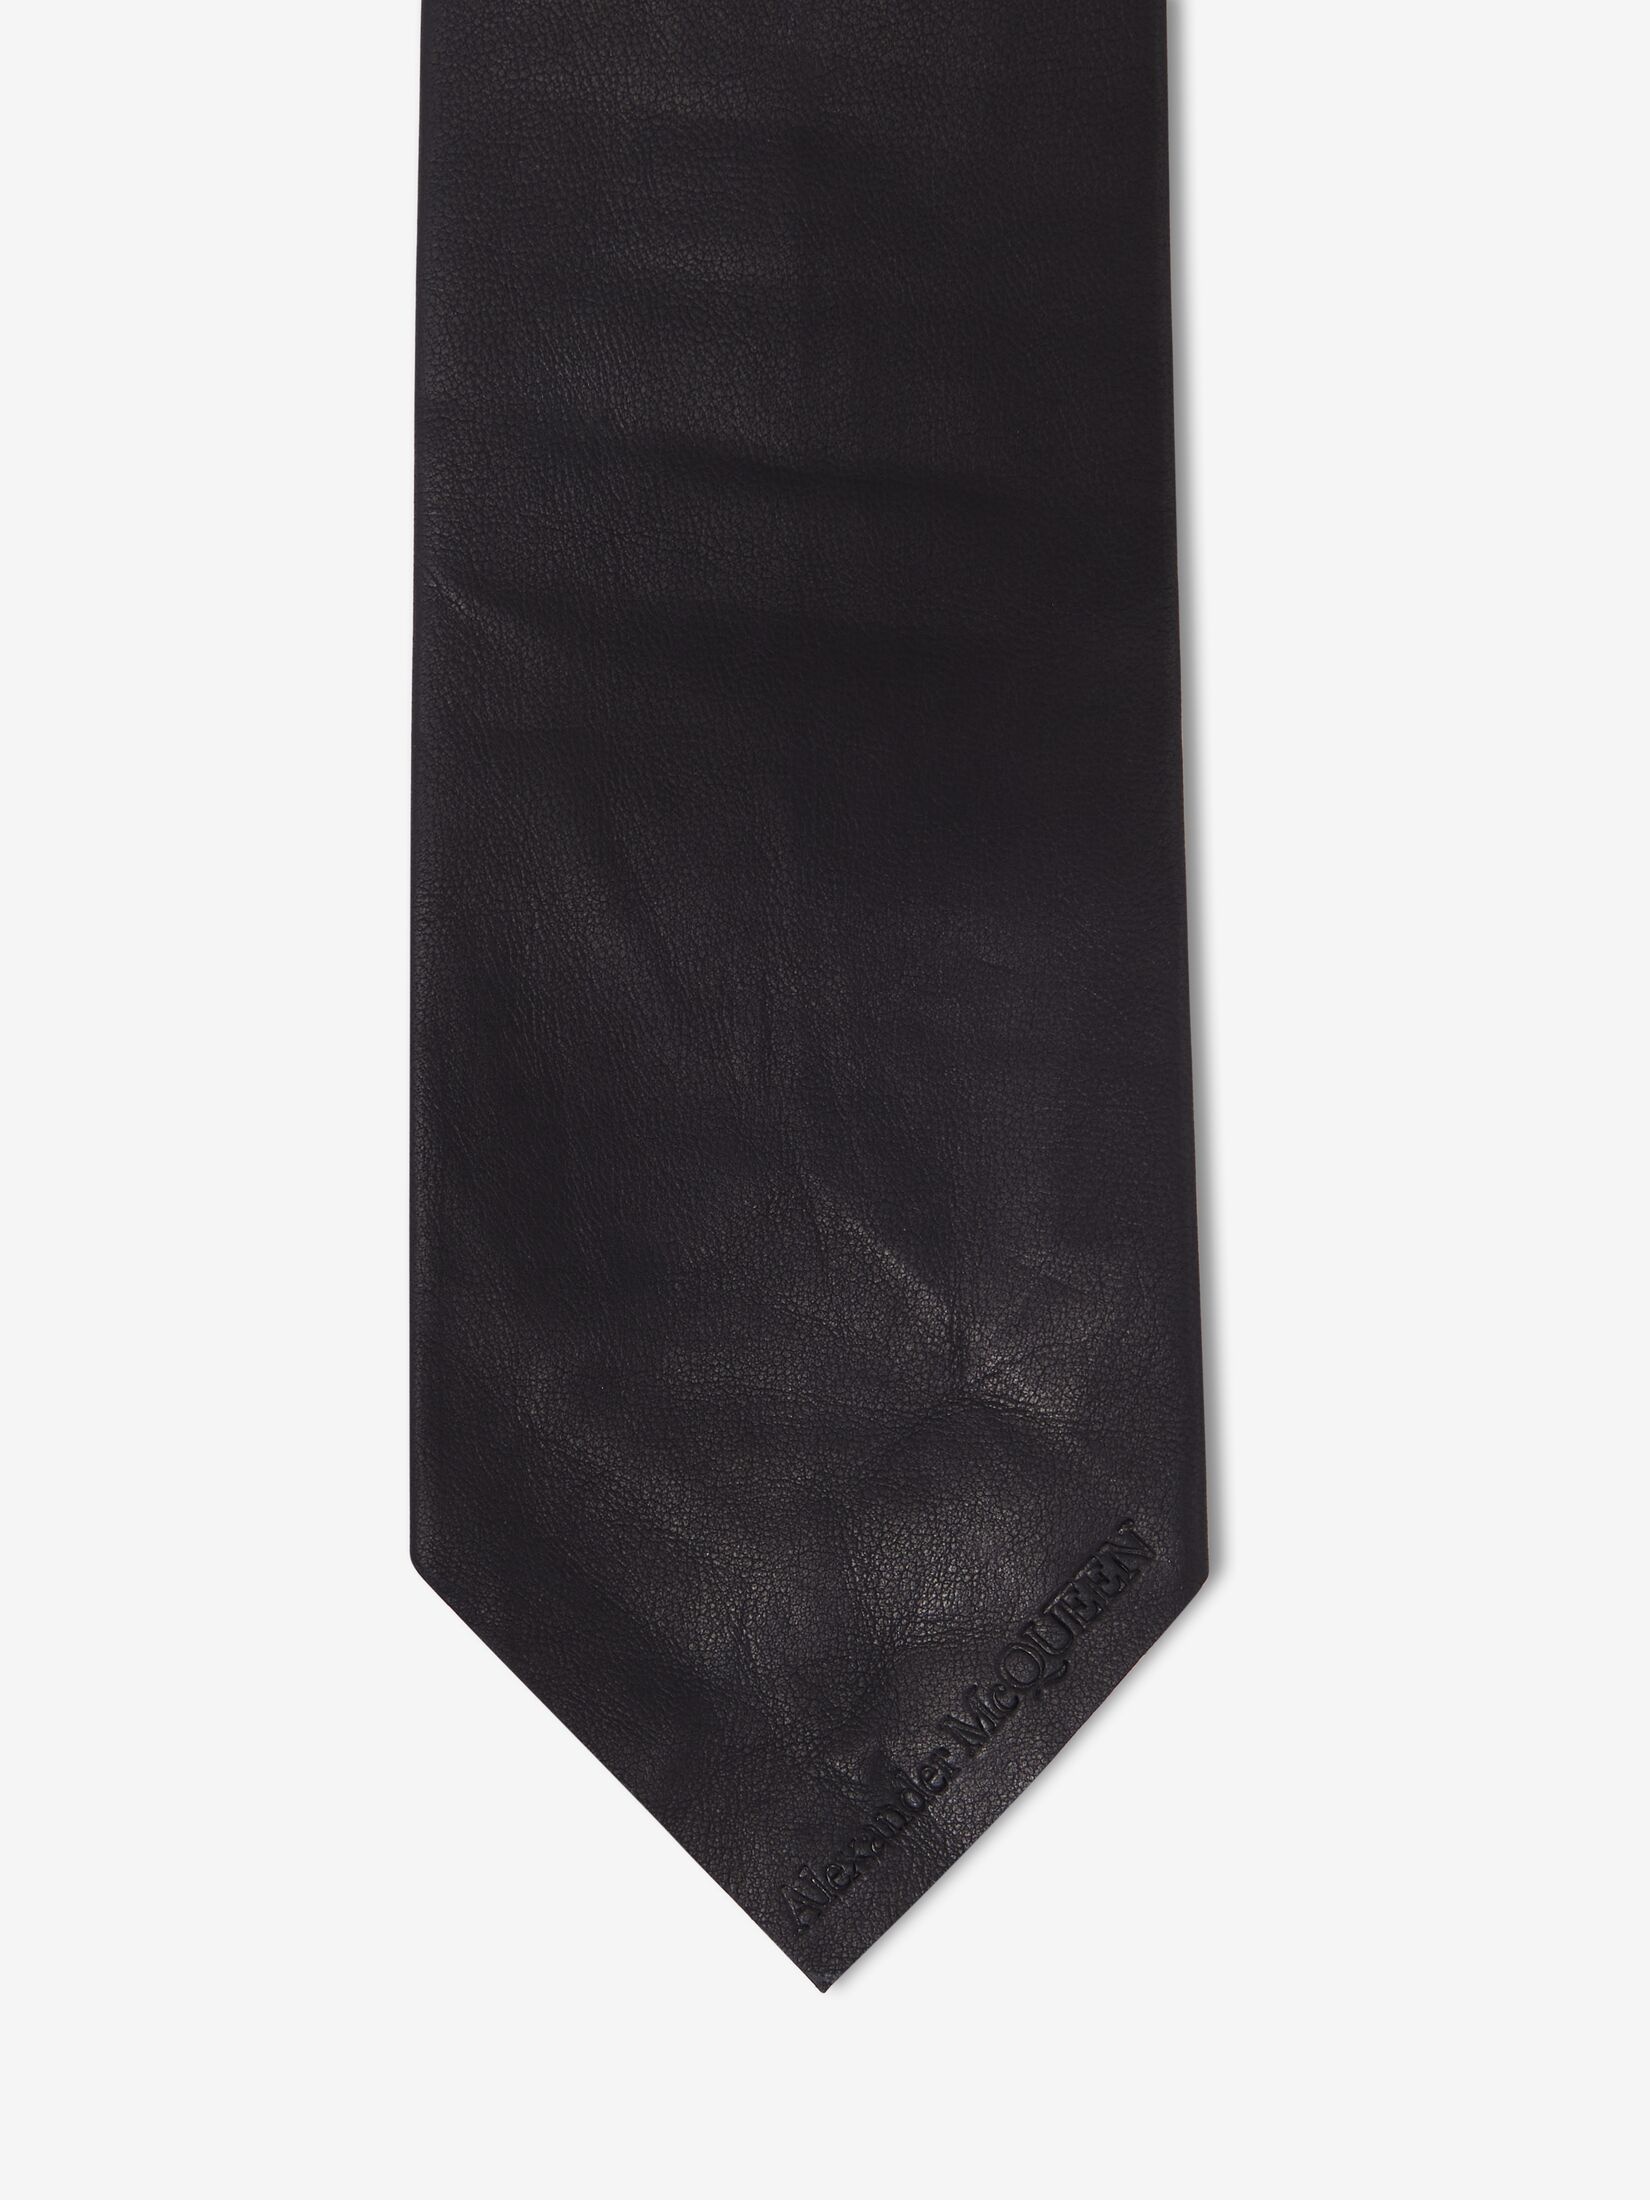 Women's Leather Tie in Black - 4